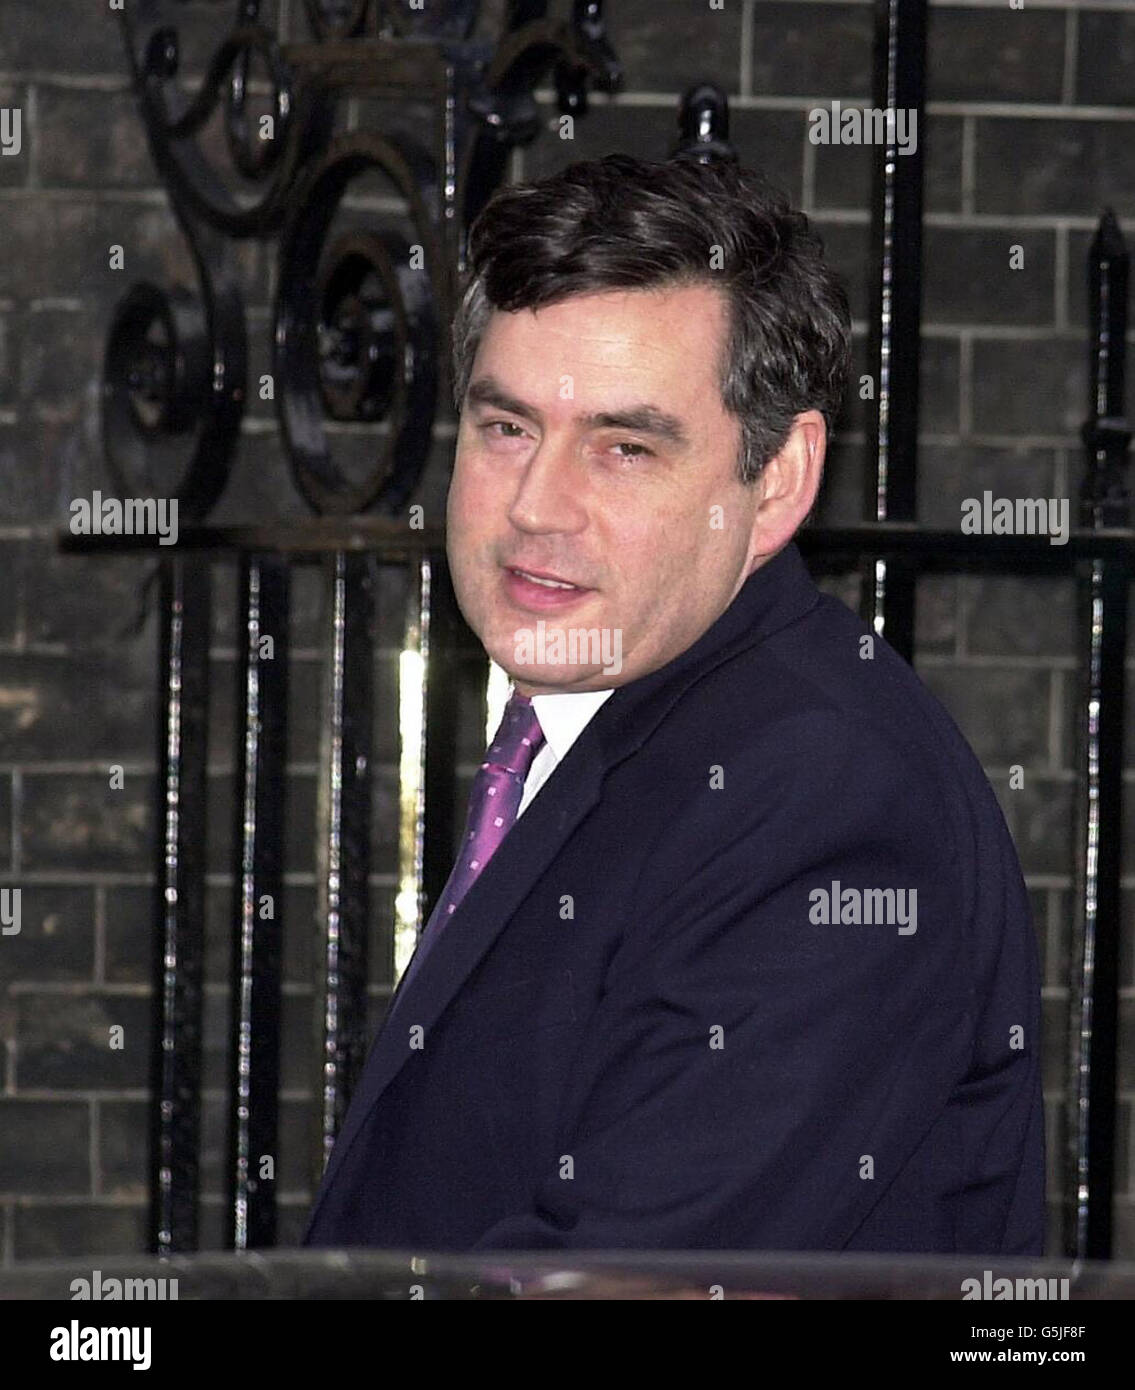 Bundeskanzler Gordon Brown kommt am Tag der Rede vor dem Haushaltsplan zur Kabinettssitzung in Downing St, London, an. Der Luft- und Raumfahrtgigant BAE Systems kündigte an, aufgrund der Verlangsamung nach den Terroranschlägen vom 11. September 1700 Arbeitsplätze zu kürzen. Stockfoto